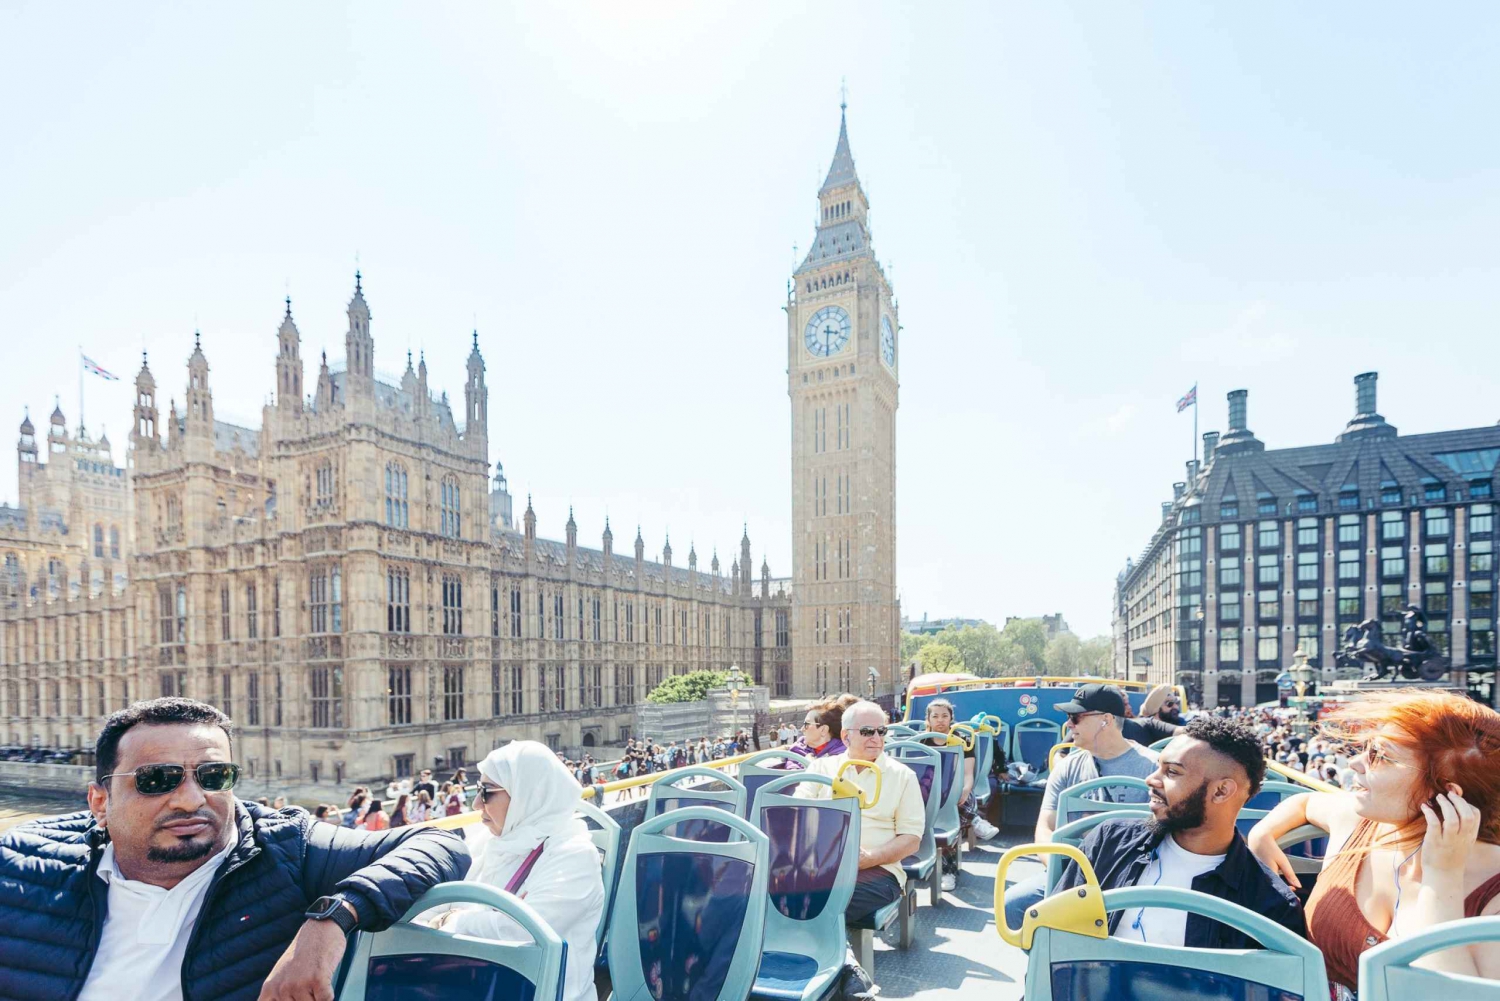 Londres: Tootbus London Discovery tour con paradas libres en autobús turístico